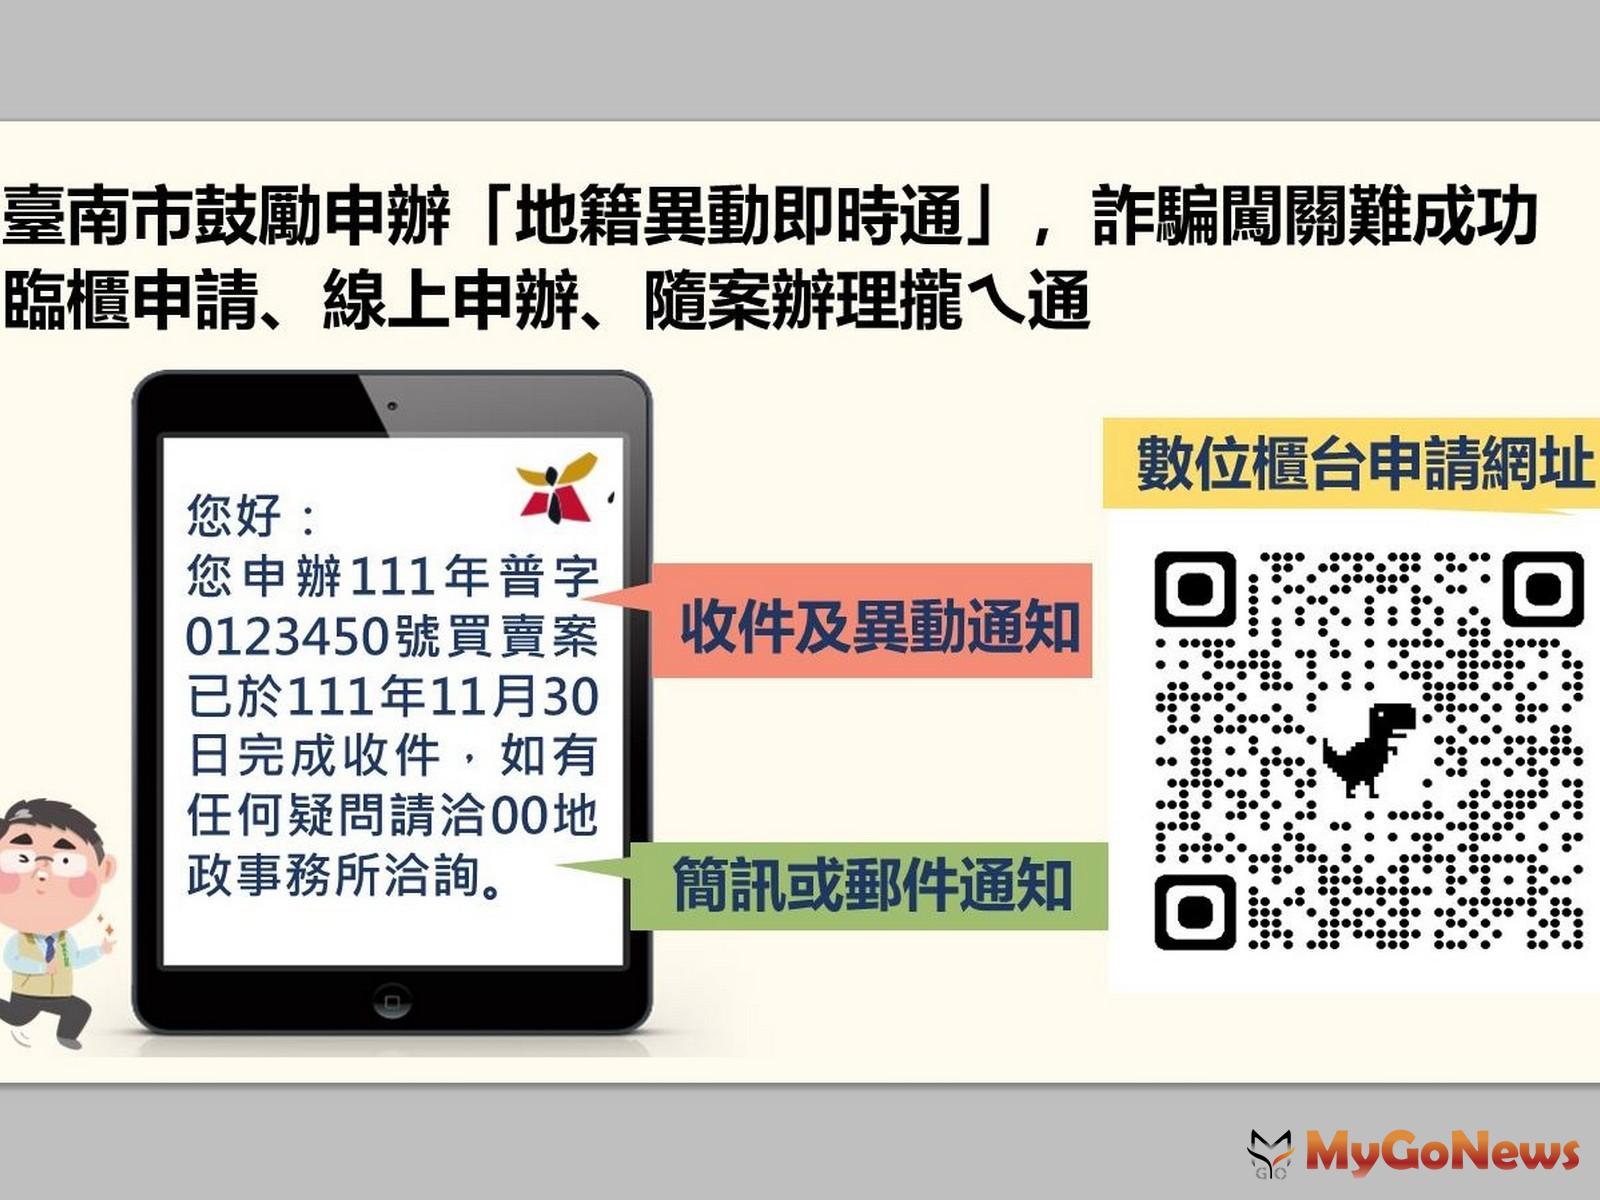 台南市鼓勵申辦「地籍異動即時通」